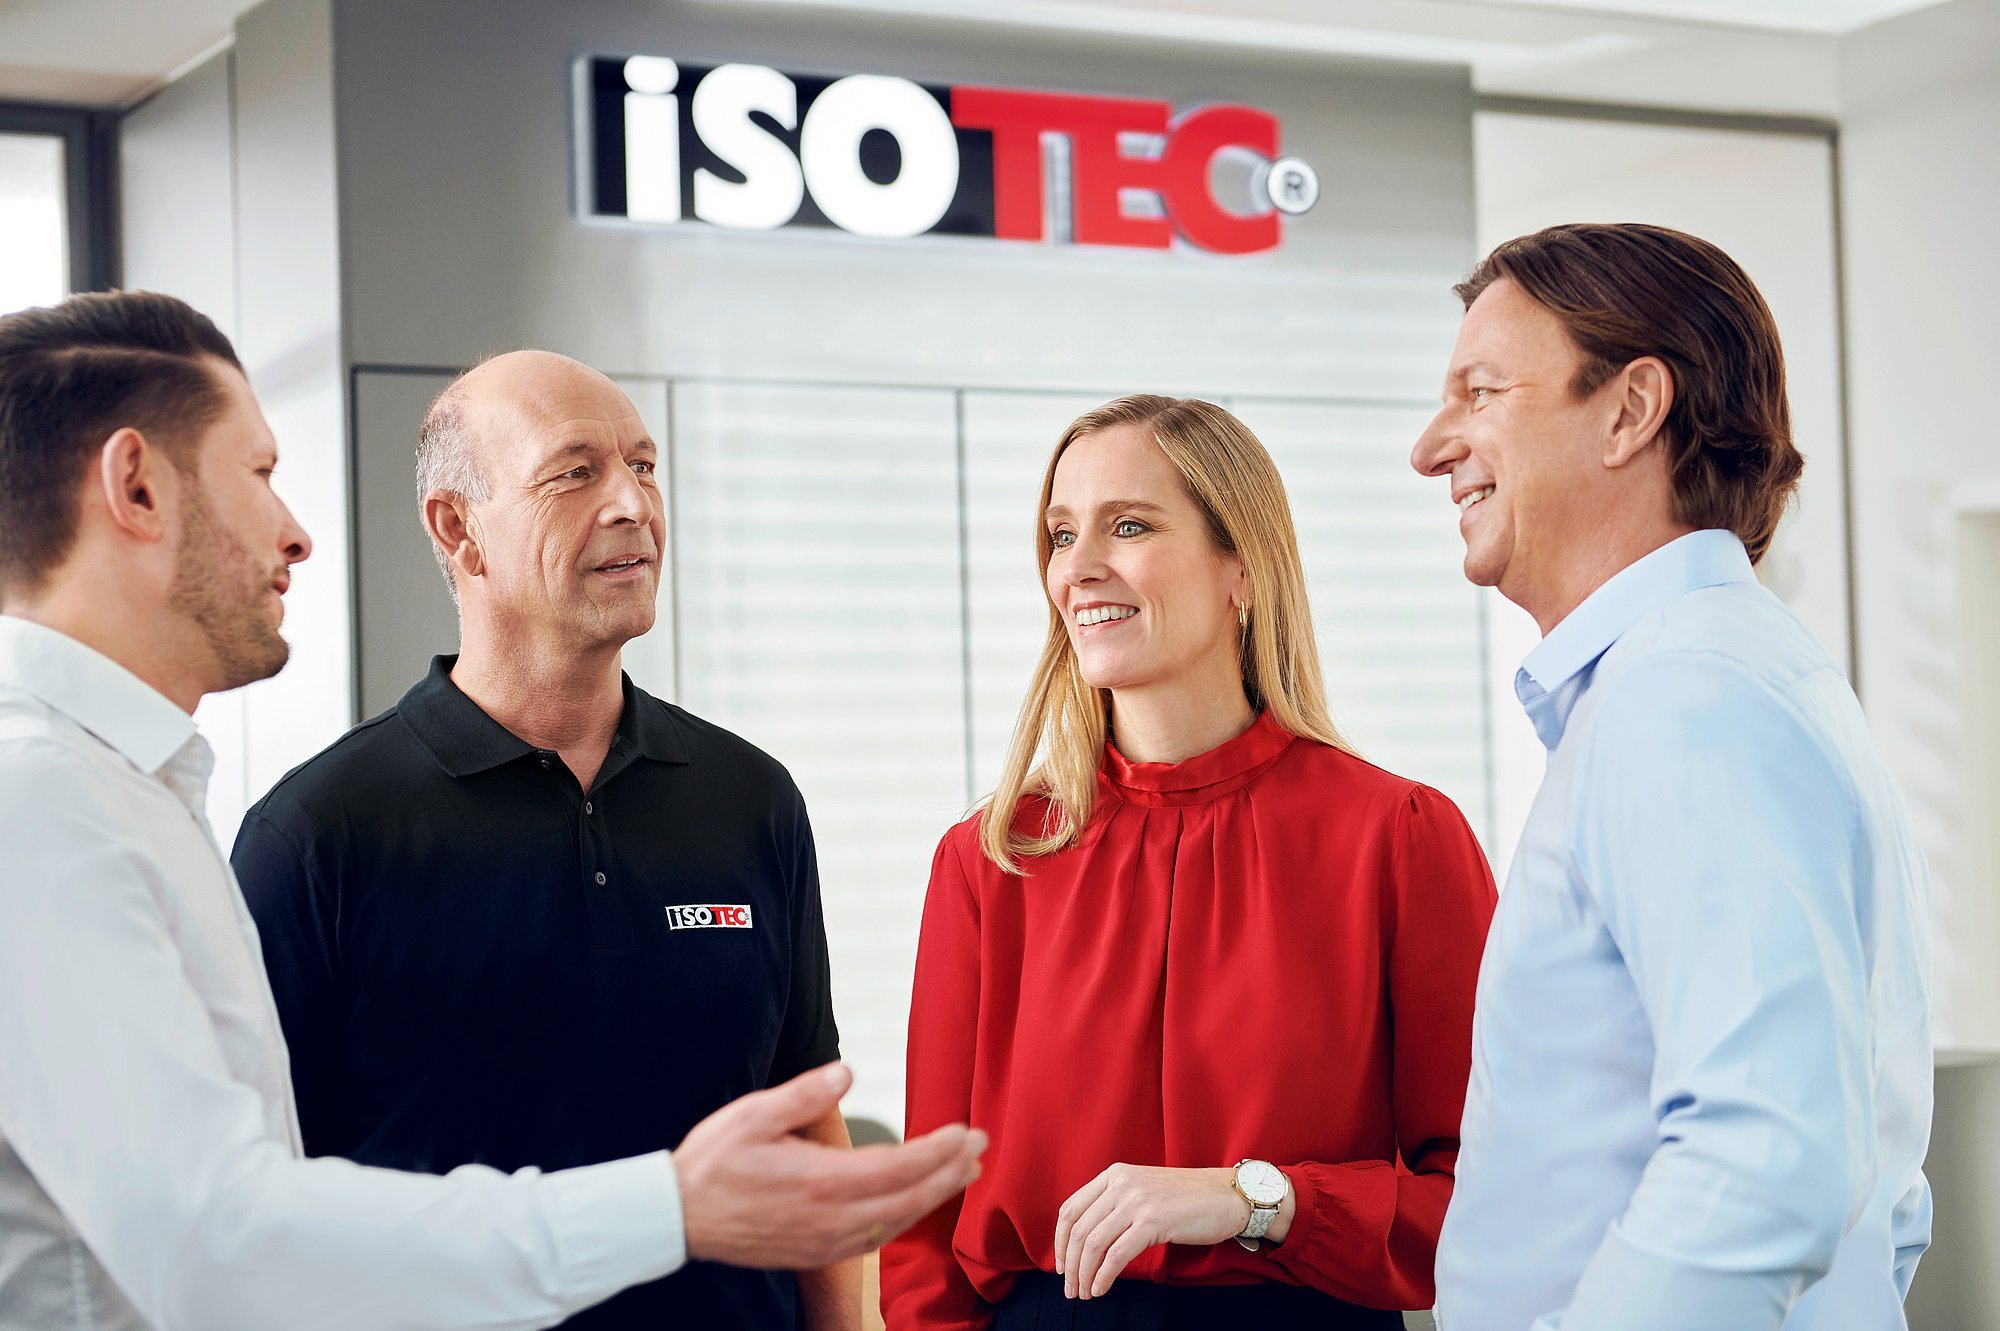 Ein angeregter Austausch zwischen Kollegen aus verschiedenen Unternehmensbereichen in einem ISOTEC-Fachbetrieb